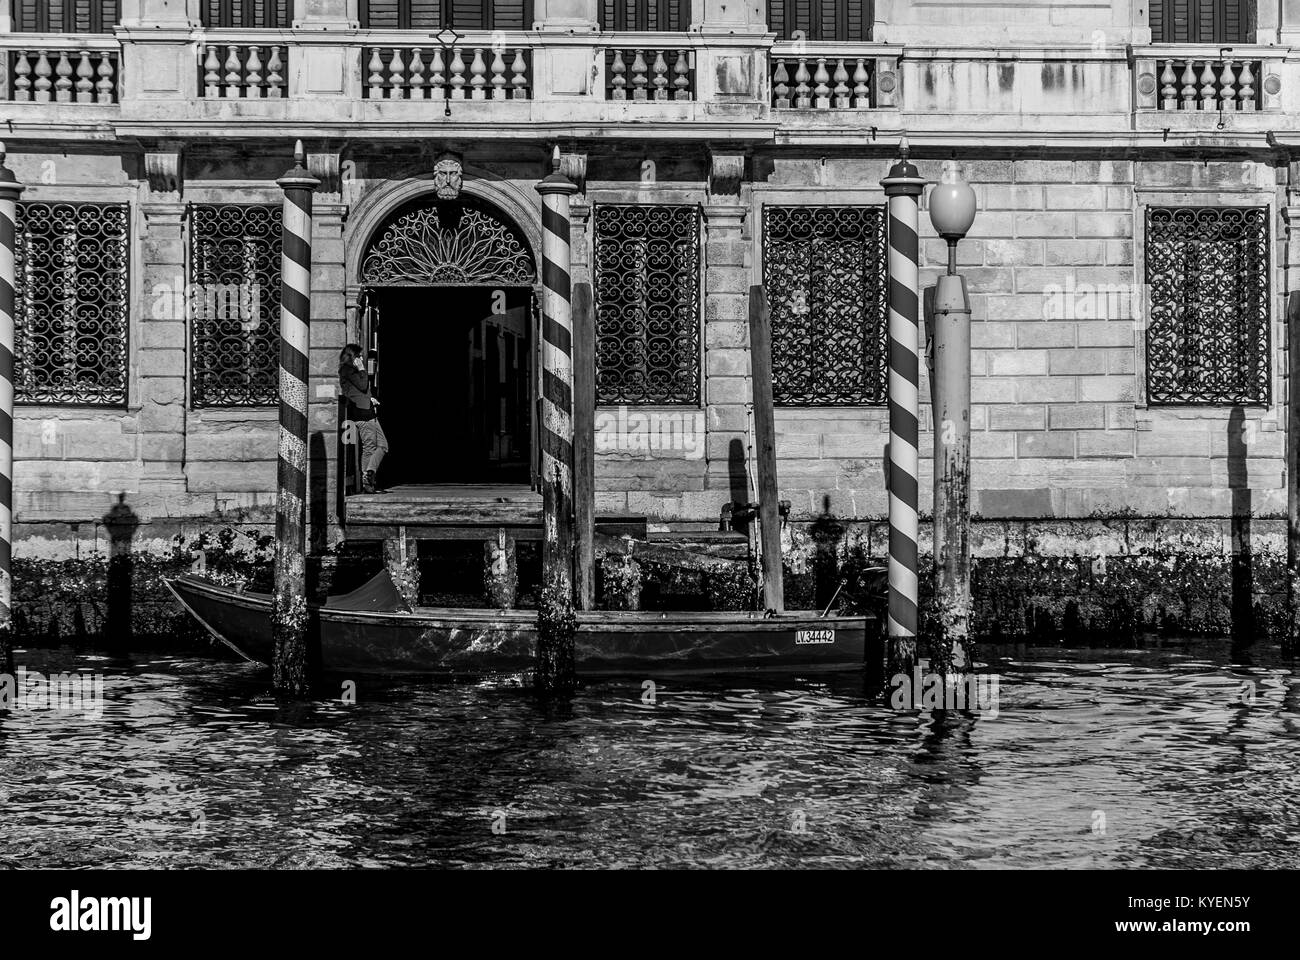 Venedig - 9. März: Ein Boot vor dem Haupteingang eines alten Gebäudes, während eine nicht identifizierte Frau Gespräche am Telefon, Venedig, Italien, März 9,2017. Stockfoto